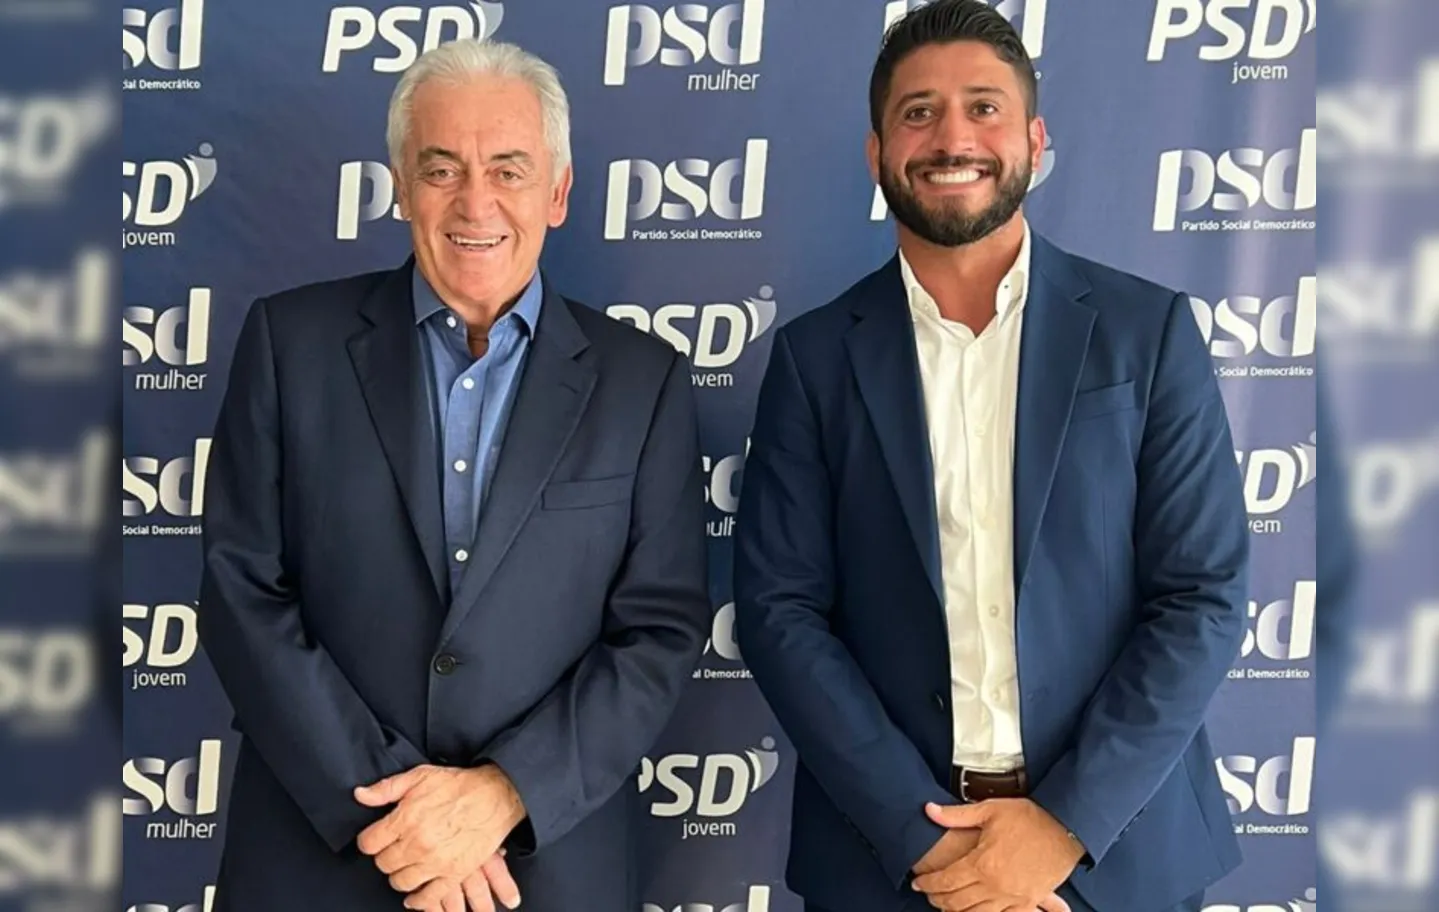  Felipe Manassés se filiou ao PSD, partido presidido pelo senador Otto Alencar na Bahia